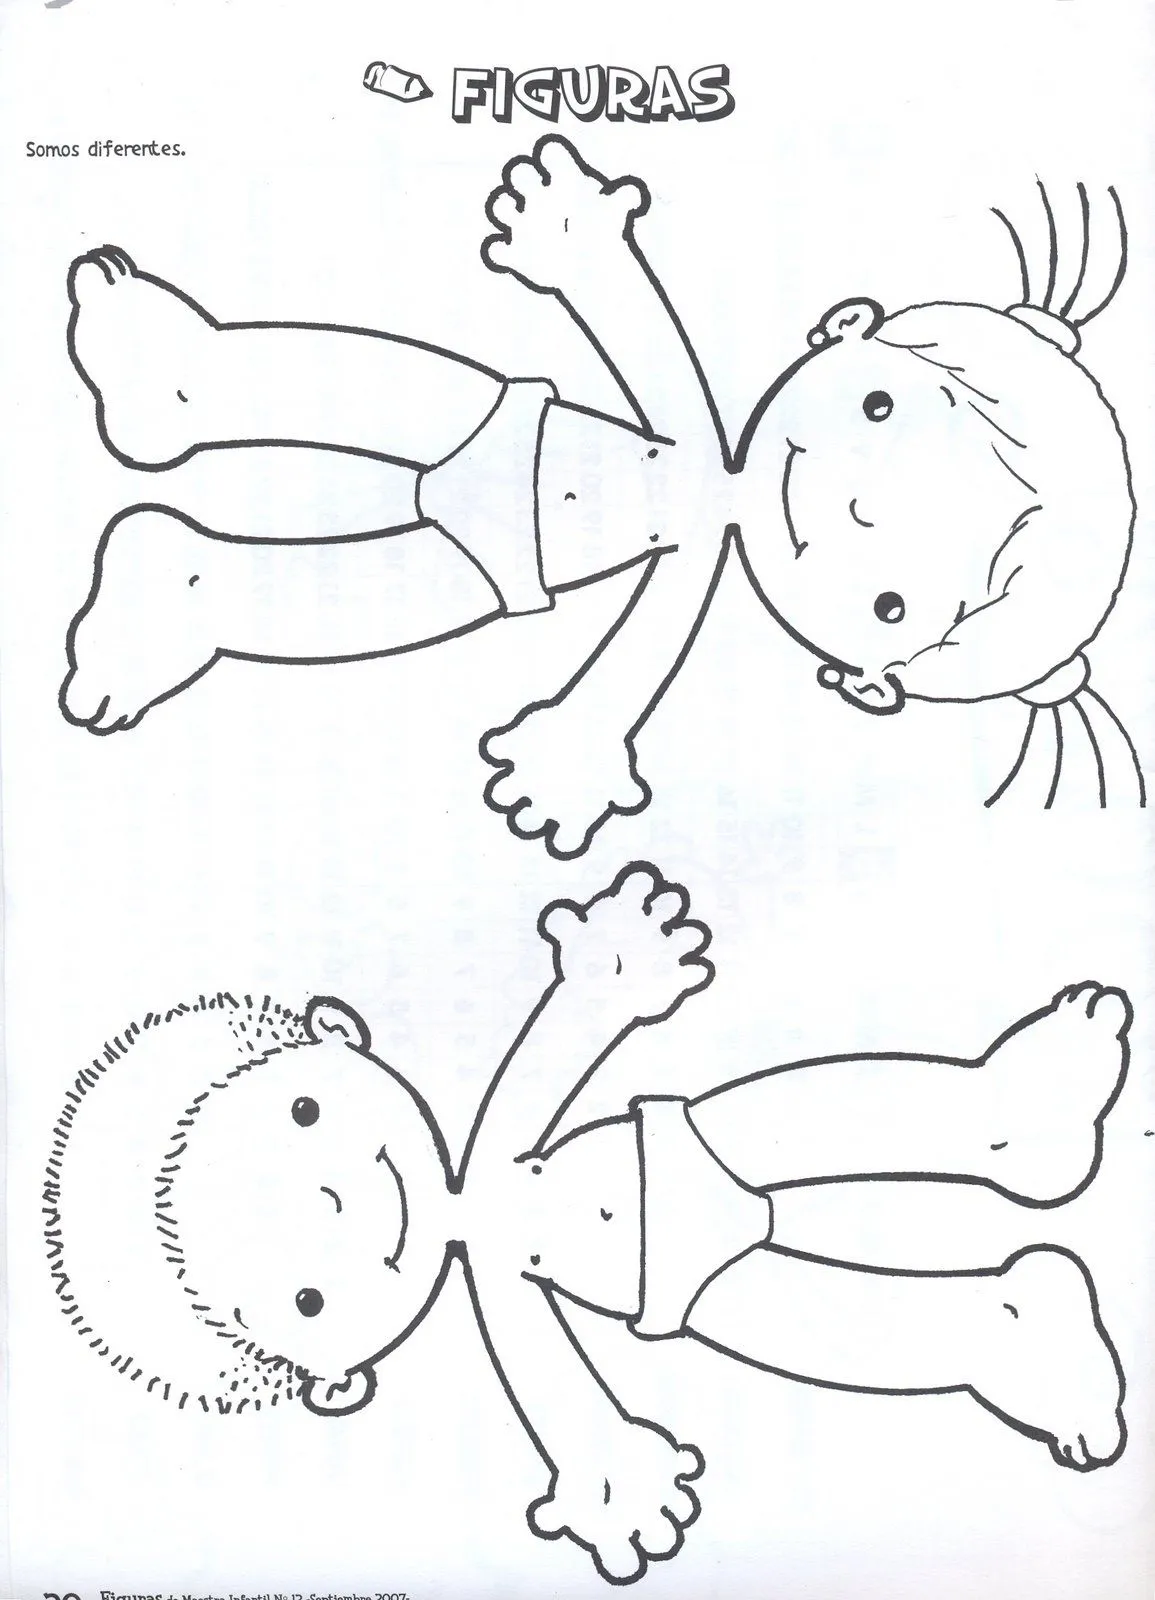 Imagen de un cuerpo humano para niños - Imagui